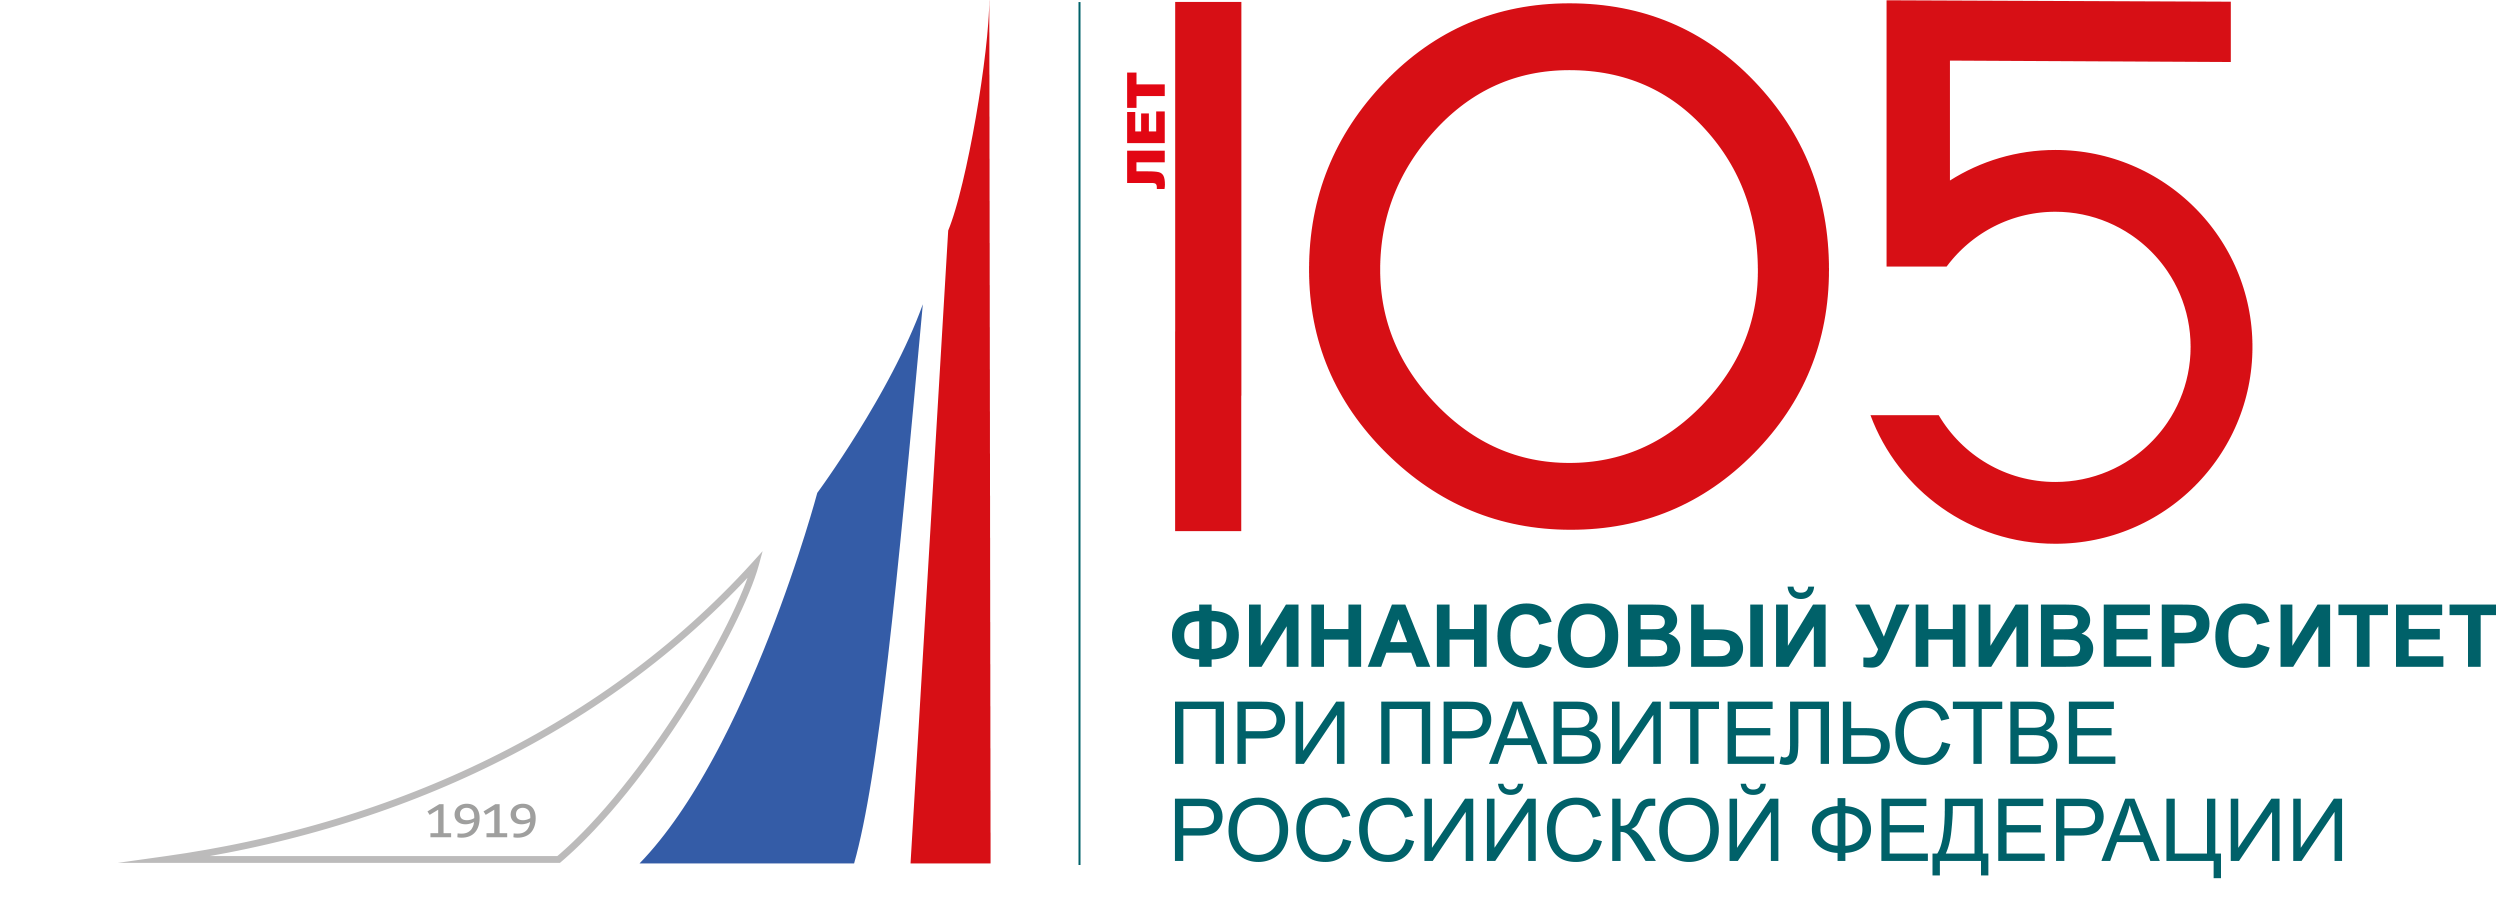 105-logo.png